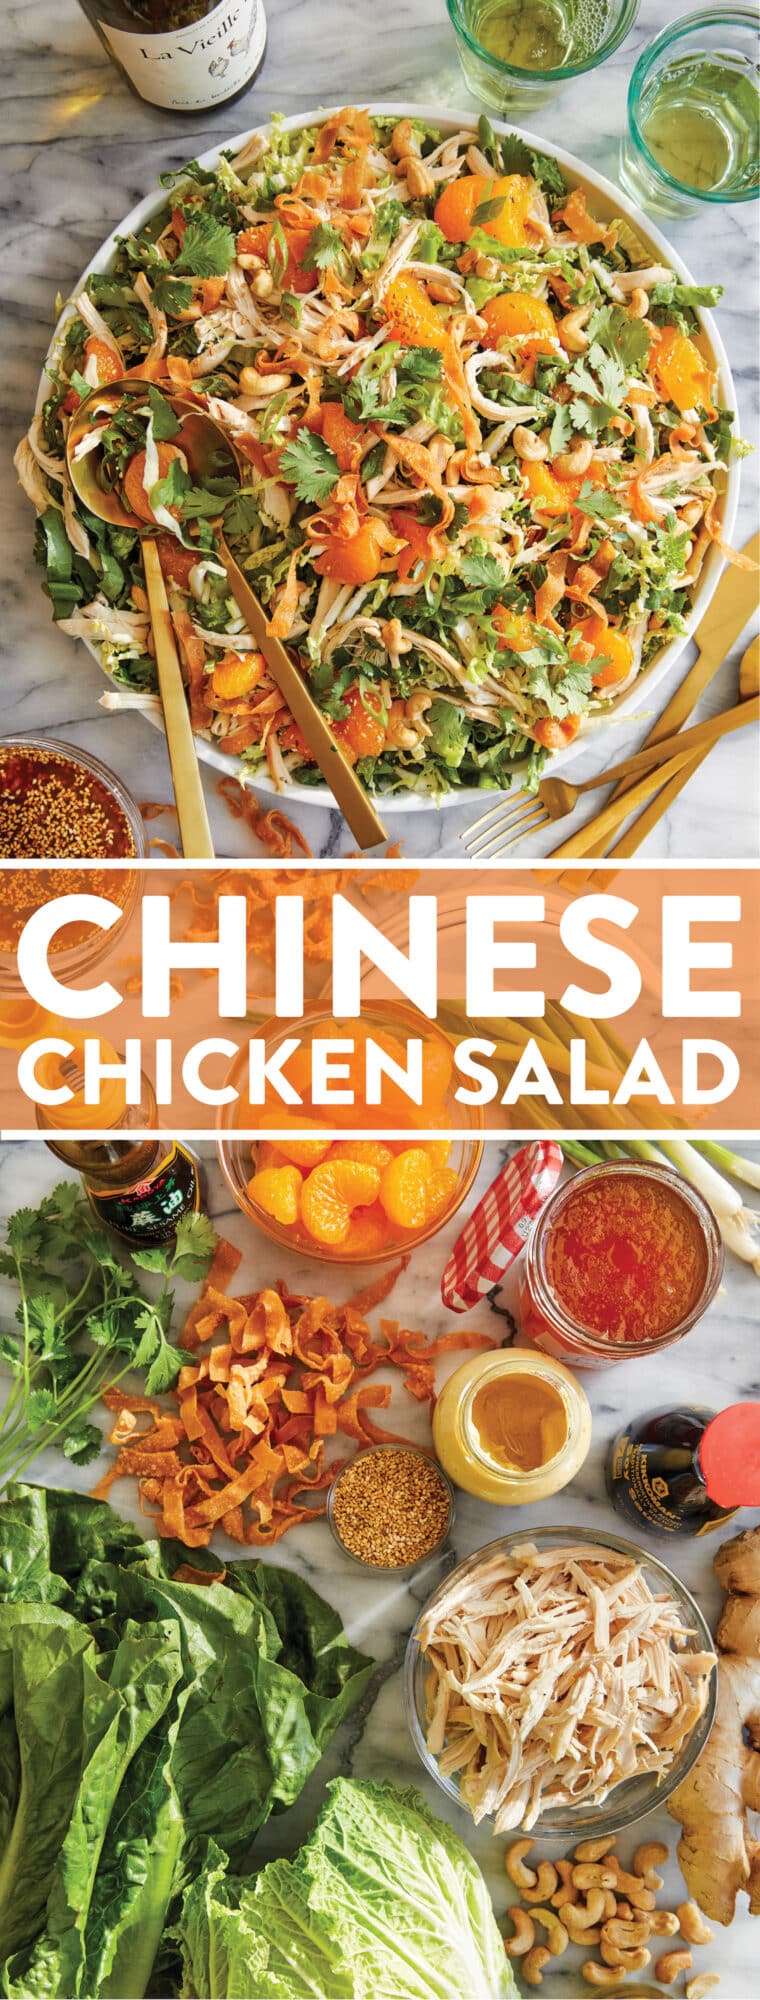 Китайский салат с курицей — приготовлен из остатков курицы-гриль, салата романо, напы, хрустящих полосок вонтонов и лучшей заправки из кунжутно-имбирного соуса!